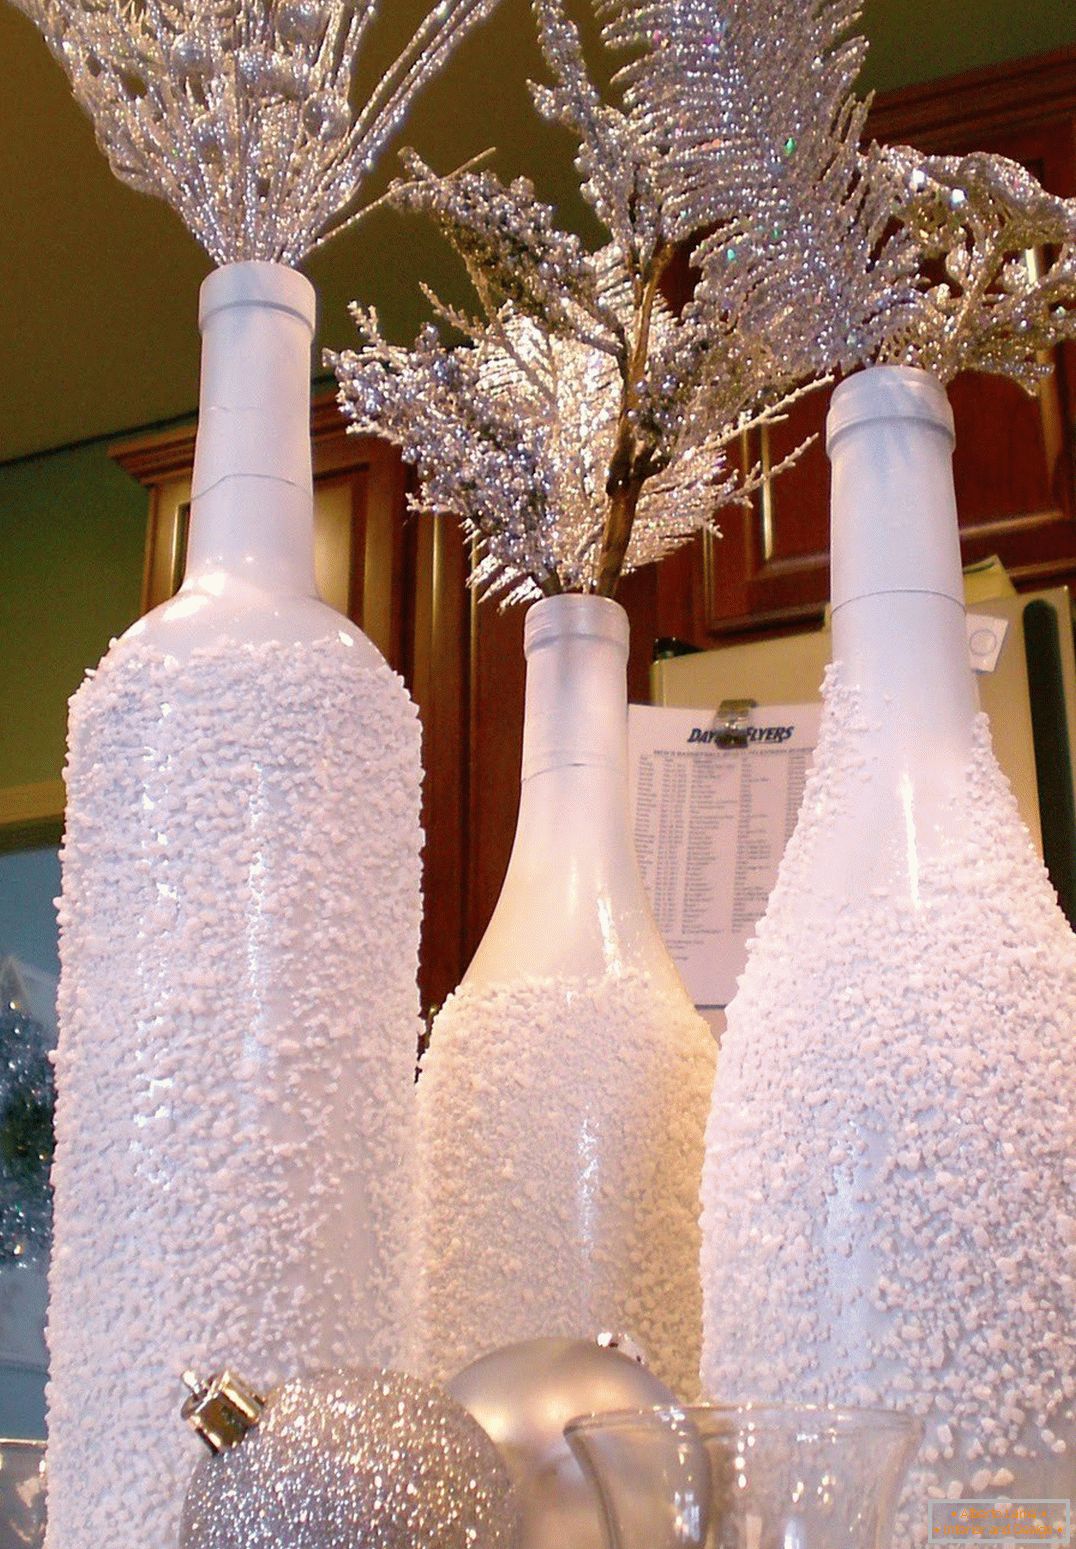 Decoración navideña de botellas